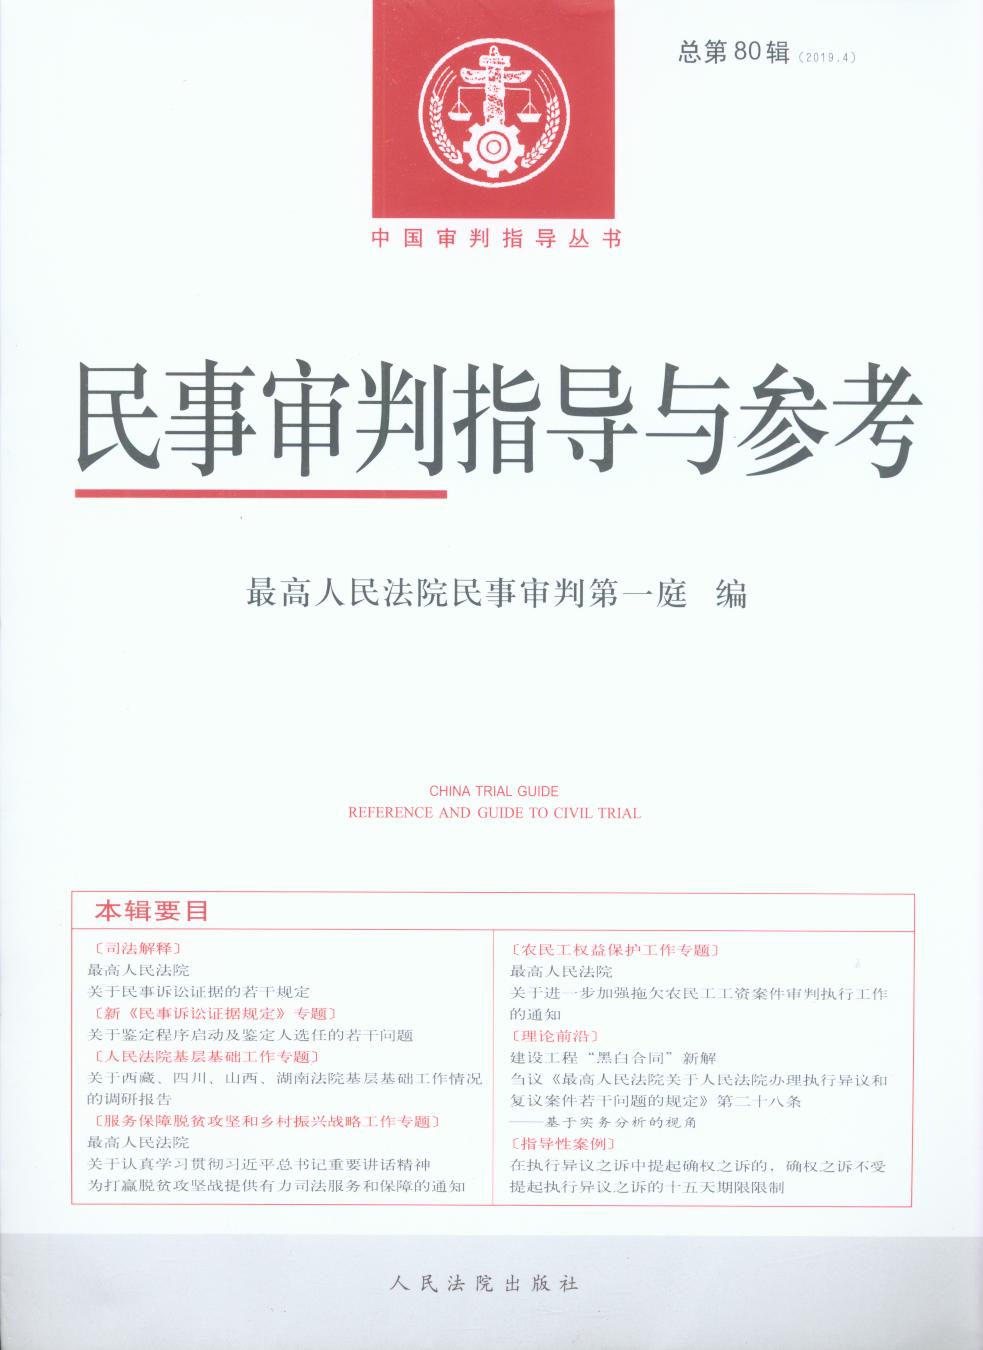 民事审判指导与参考2019.4总第80辑/中国审判指导丛书